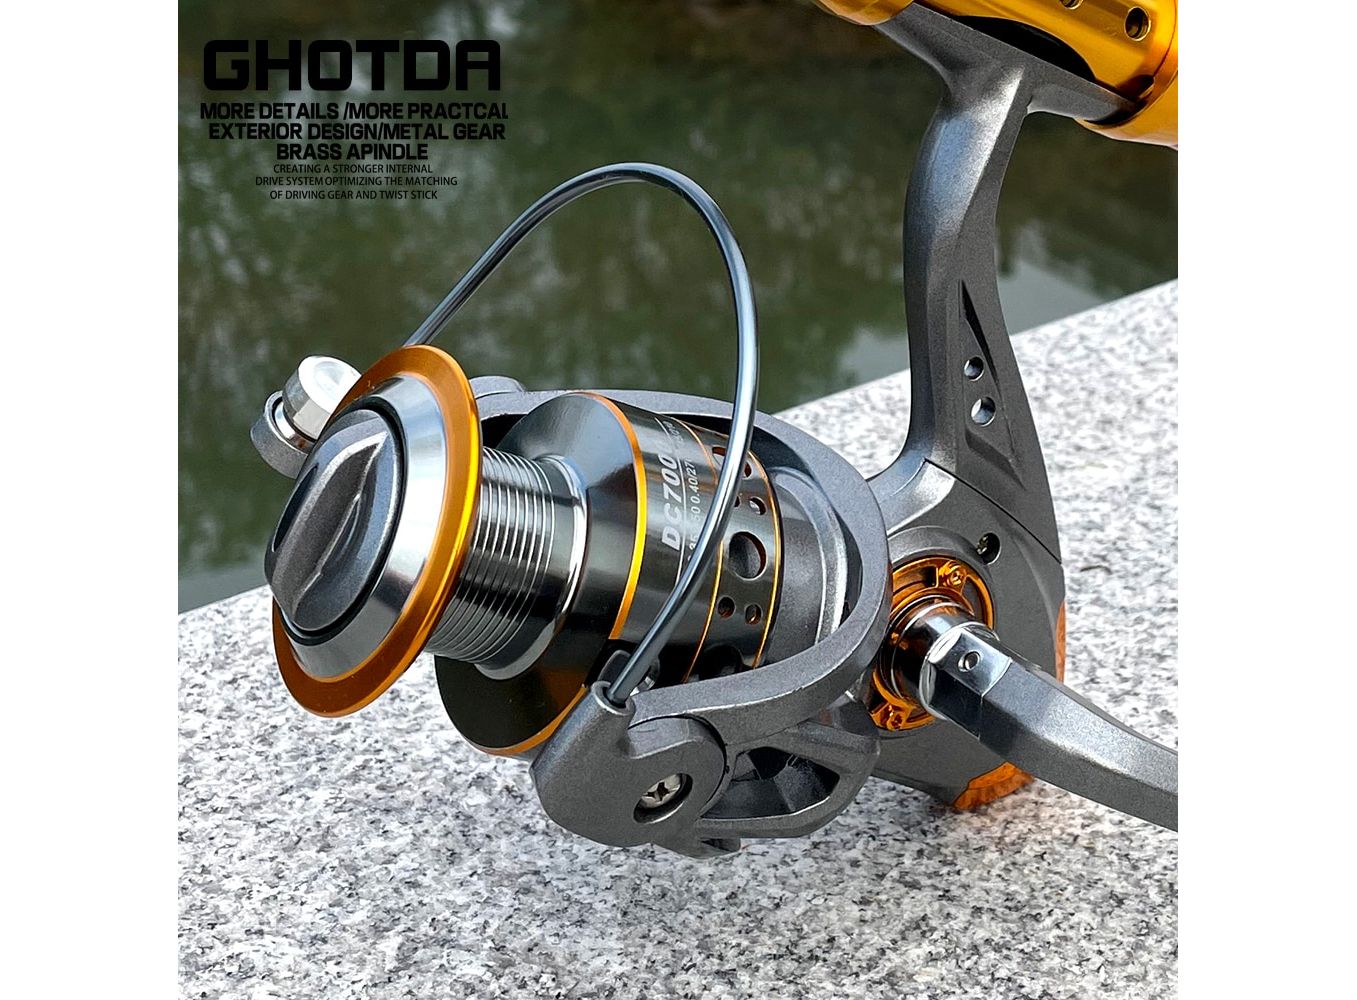 https://protechshop.co.uk/images/thumbnails/1357/1000/detailed/62/GHOTDA-Fishing-Reel-Spinning-1000-7000-Series-Metal-Spool-Spinning-Wheel-for-Sea-Fishing-Carp-Fishing_2zun-ak.jpg